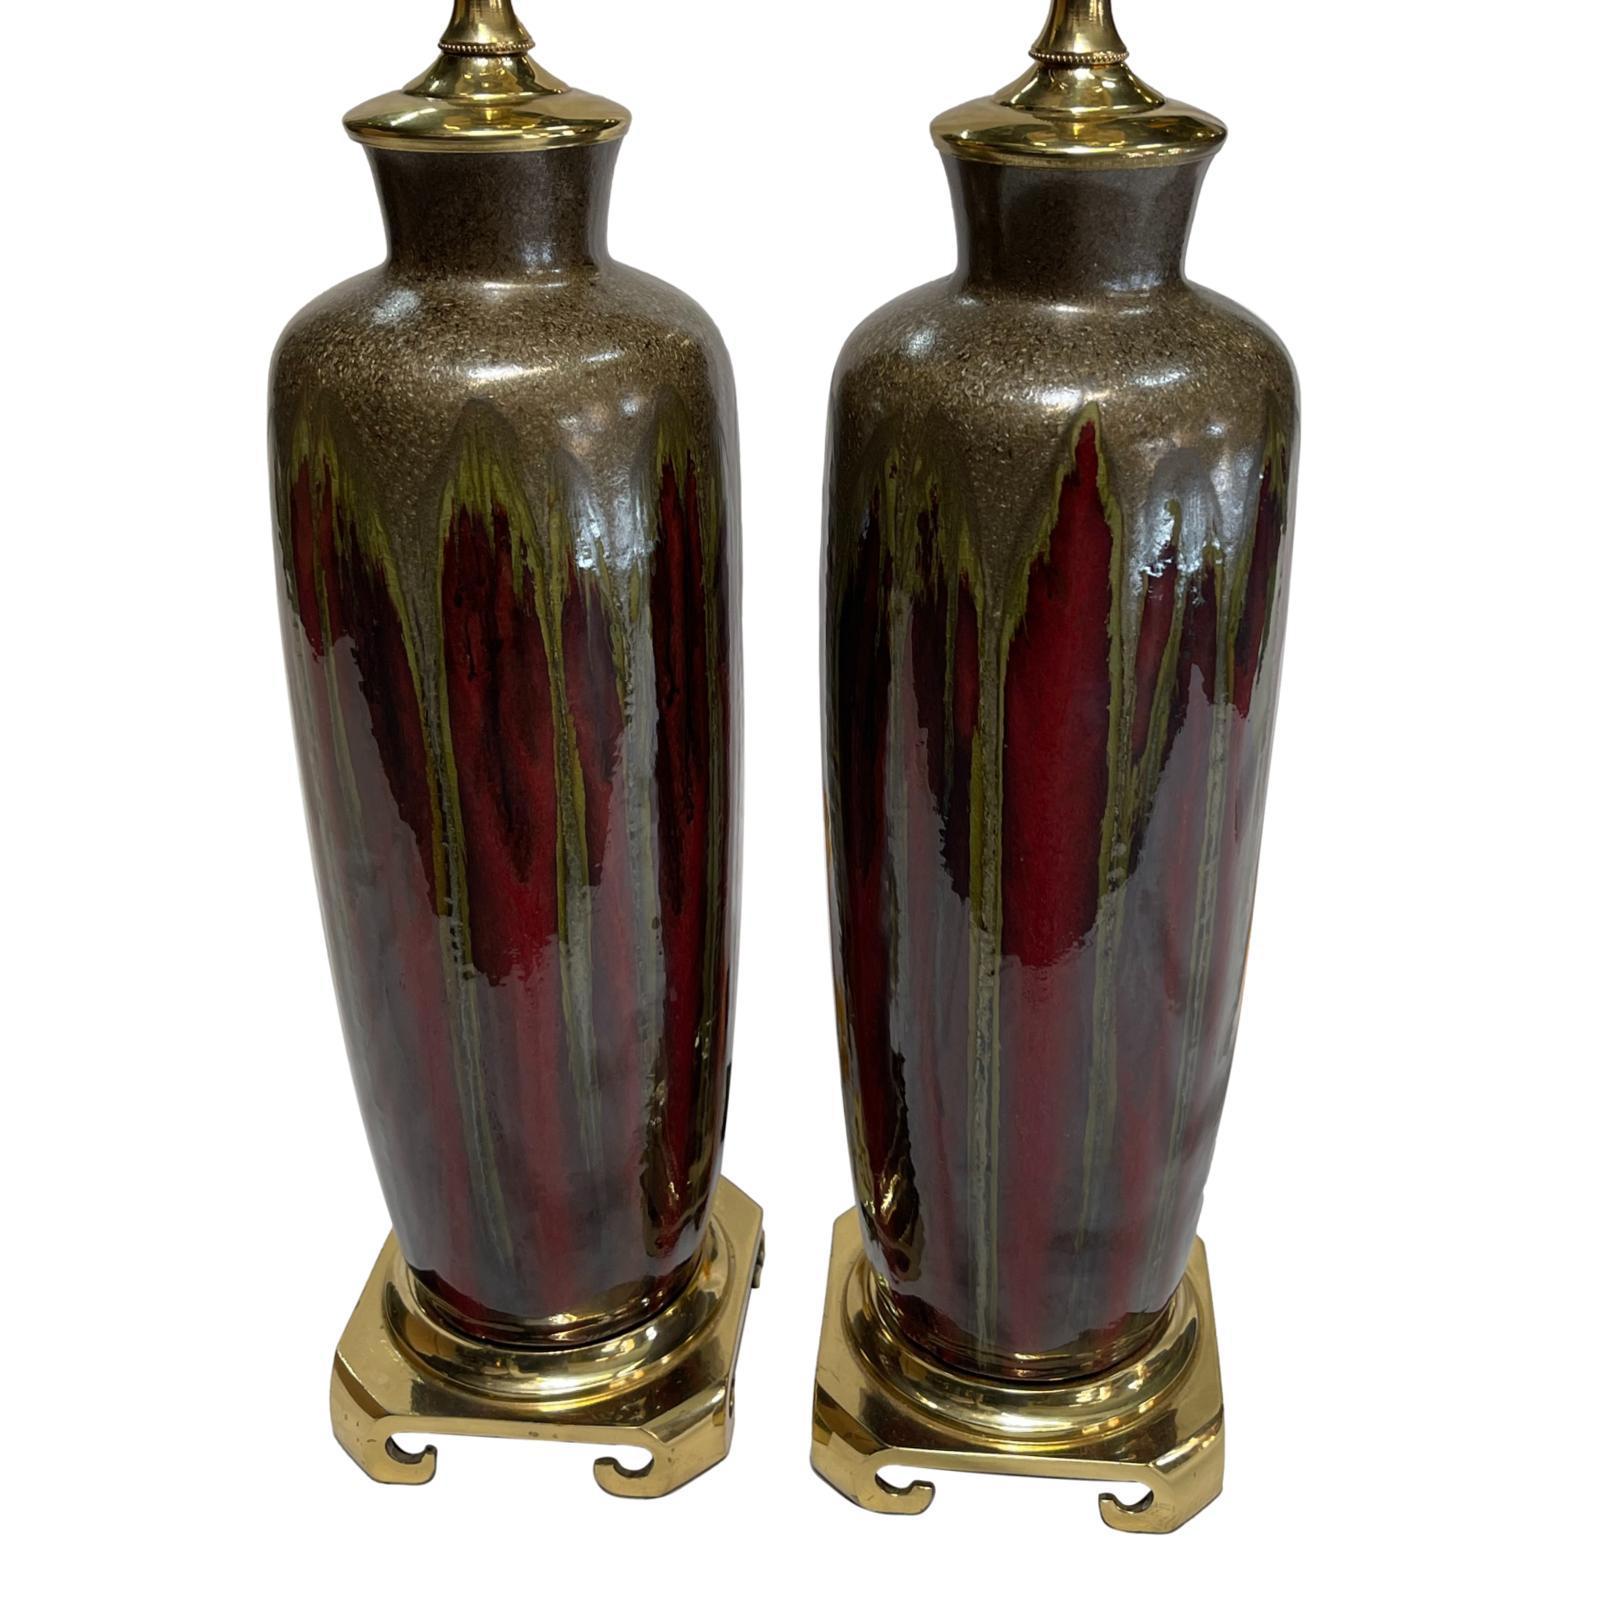 Zwei italienische Porzellan-Tischlampen aus den 1950er Jahren mit Tropfglasur und Bronzefuß.

Abmessungen:
Höhe des Körpers: 15